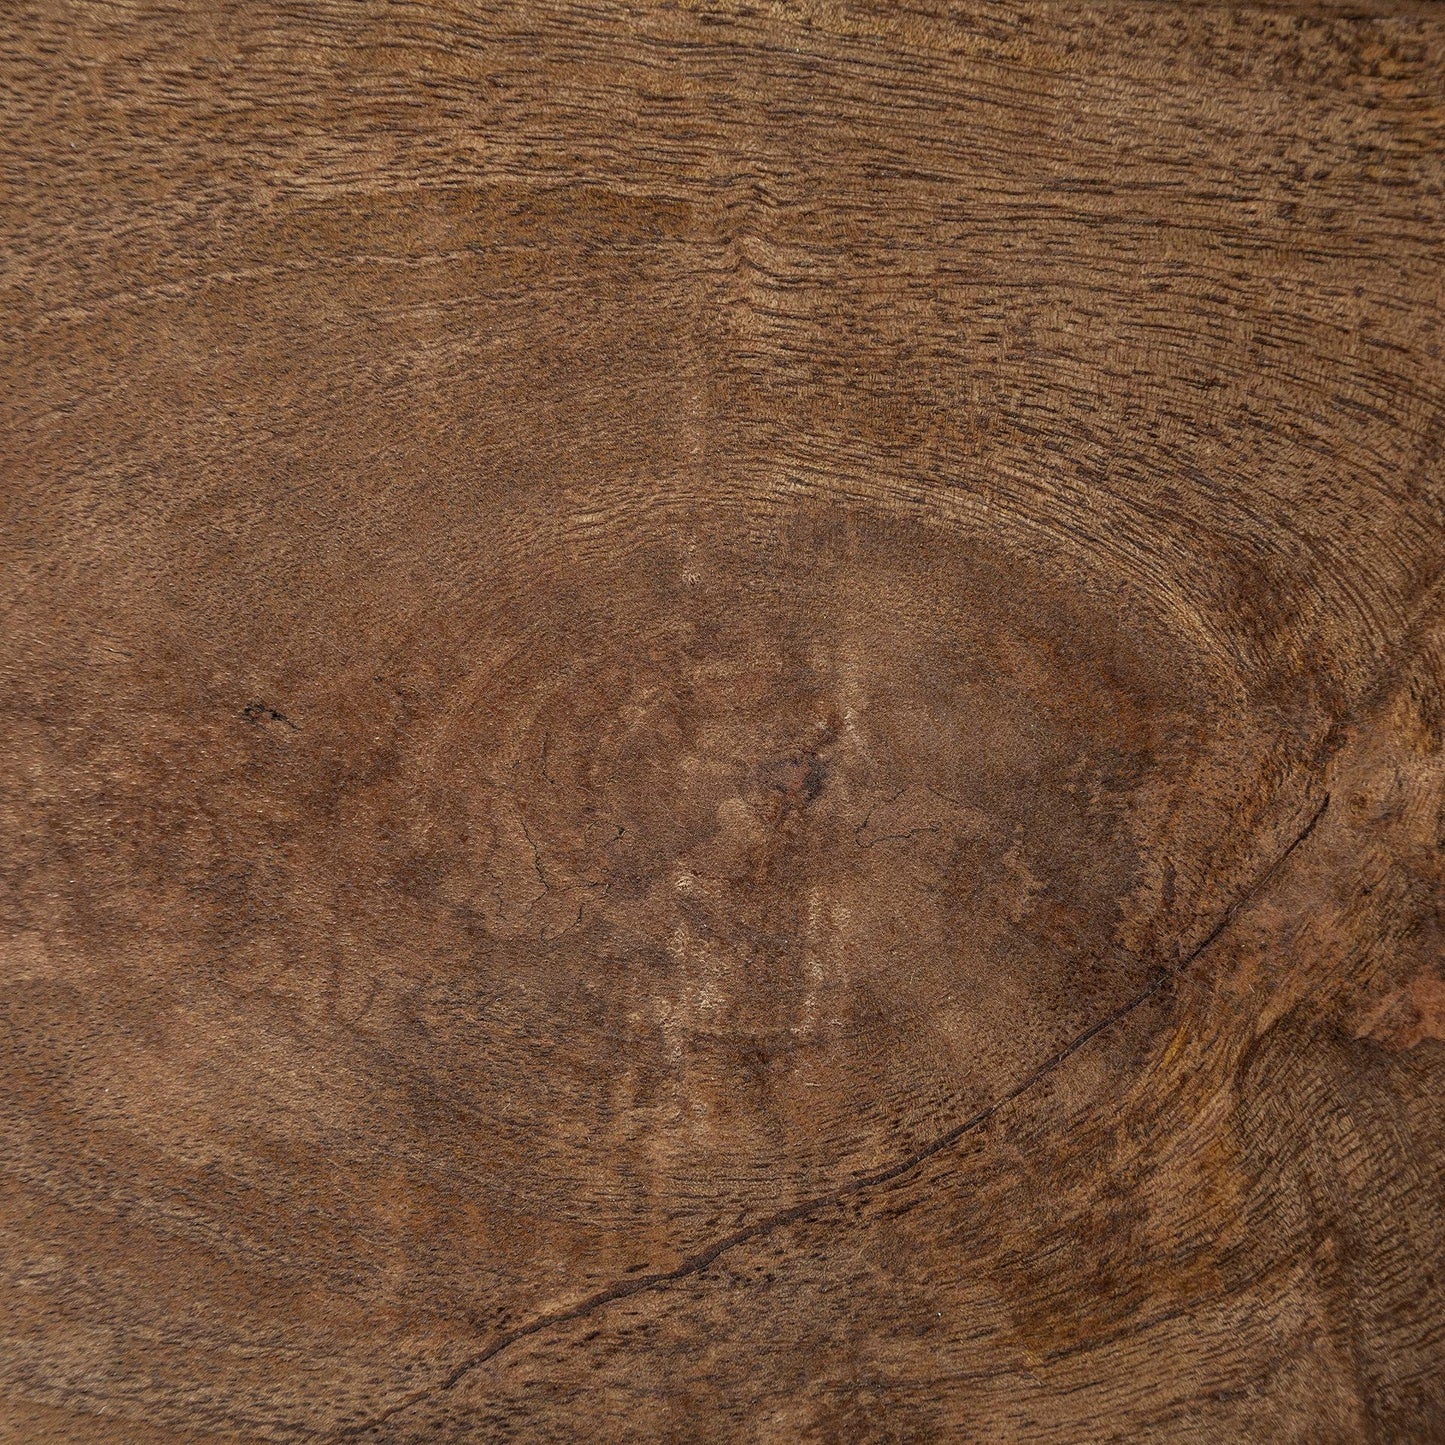 Maddox 30L x 18W x 22H Medium Brown Wood w/ Black Metal U-shaped End/Side Table